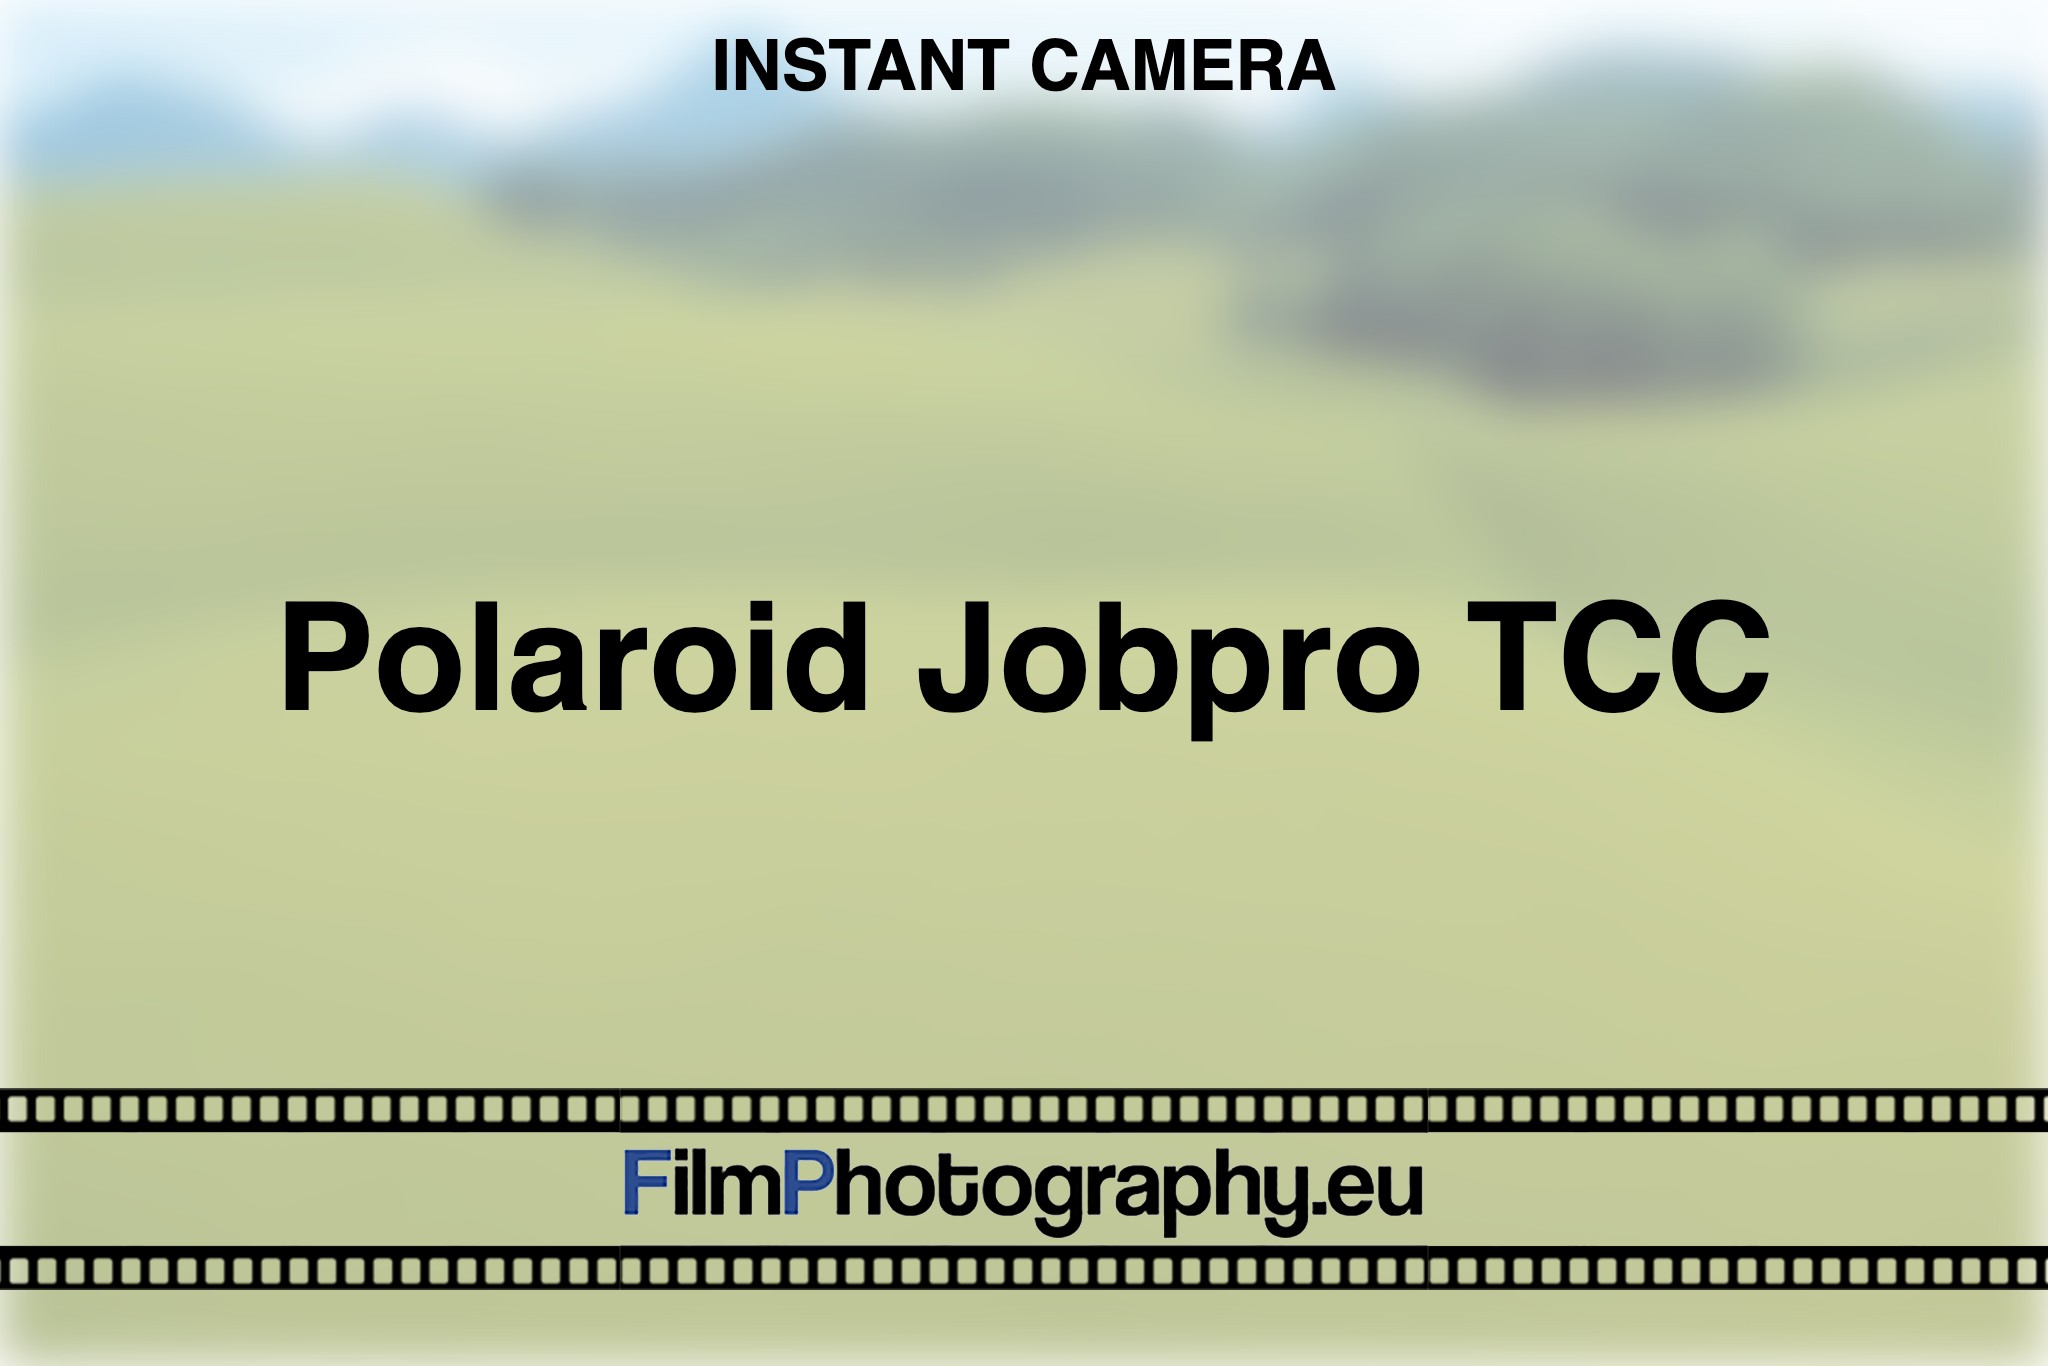 polaroid-jobpro-tcc-instant-camera-bnv